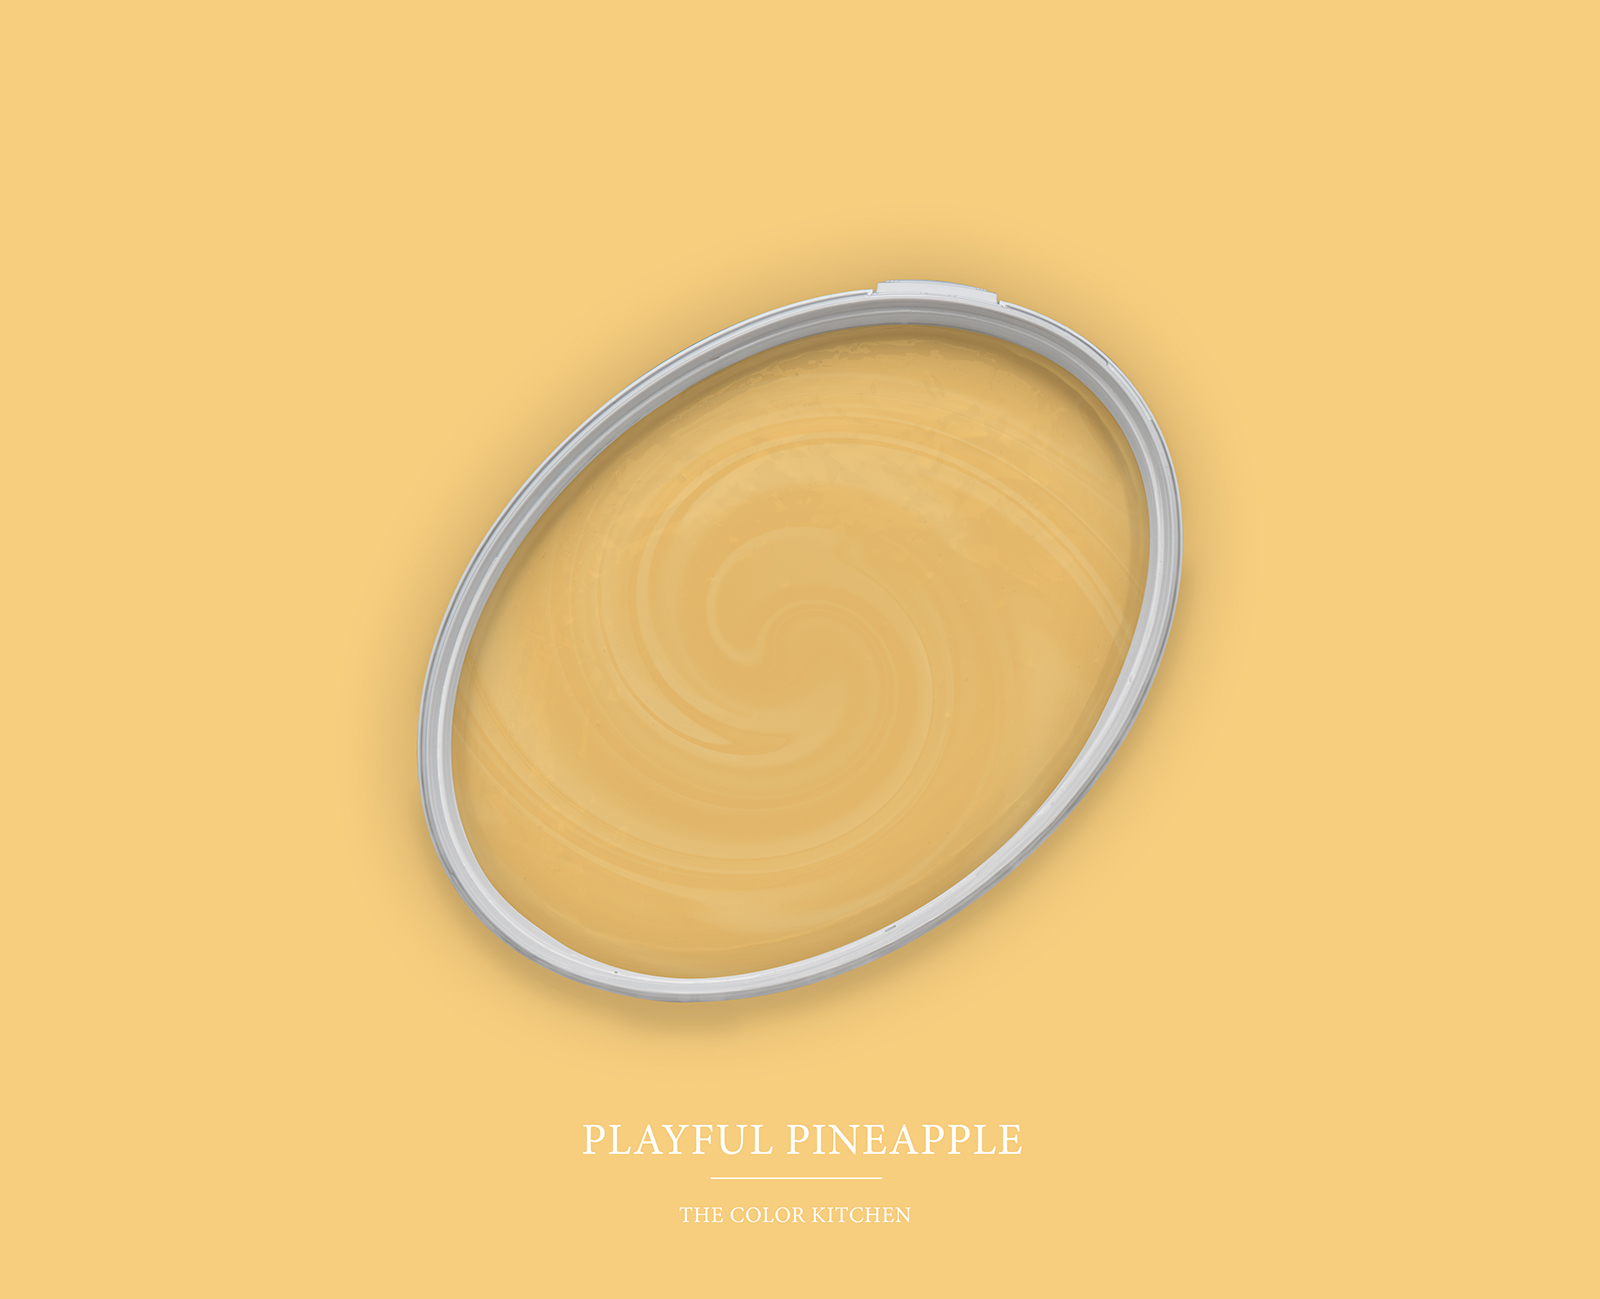             Muurverf TCK5005 »Playful Pineapple« in vriendelijk geel – 2,5 liter
        